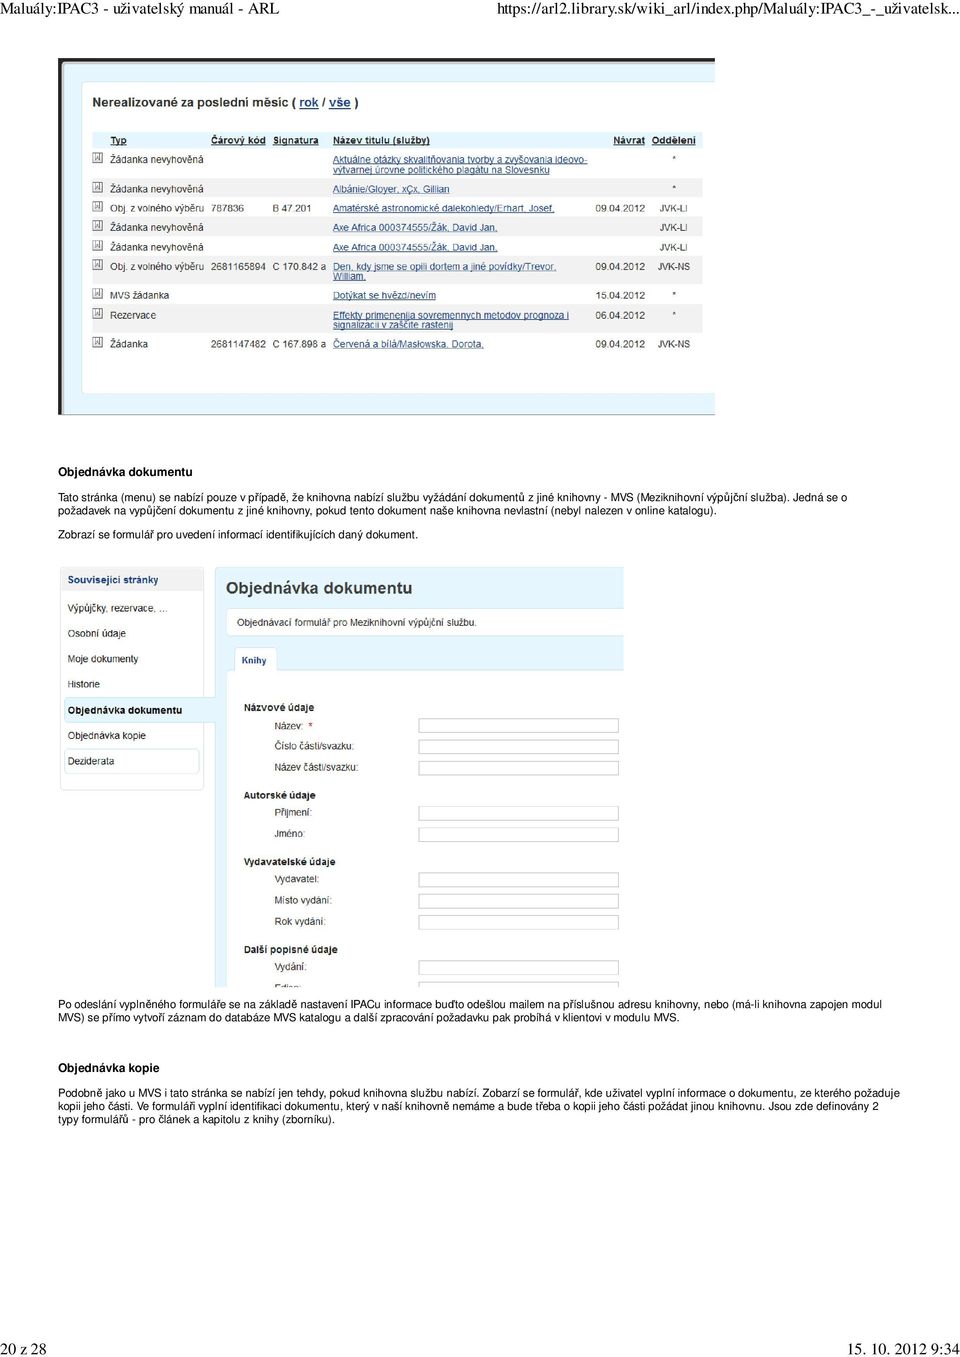 Zobrazí se formulář pro uvedení informací identifikujících daný dokument.